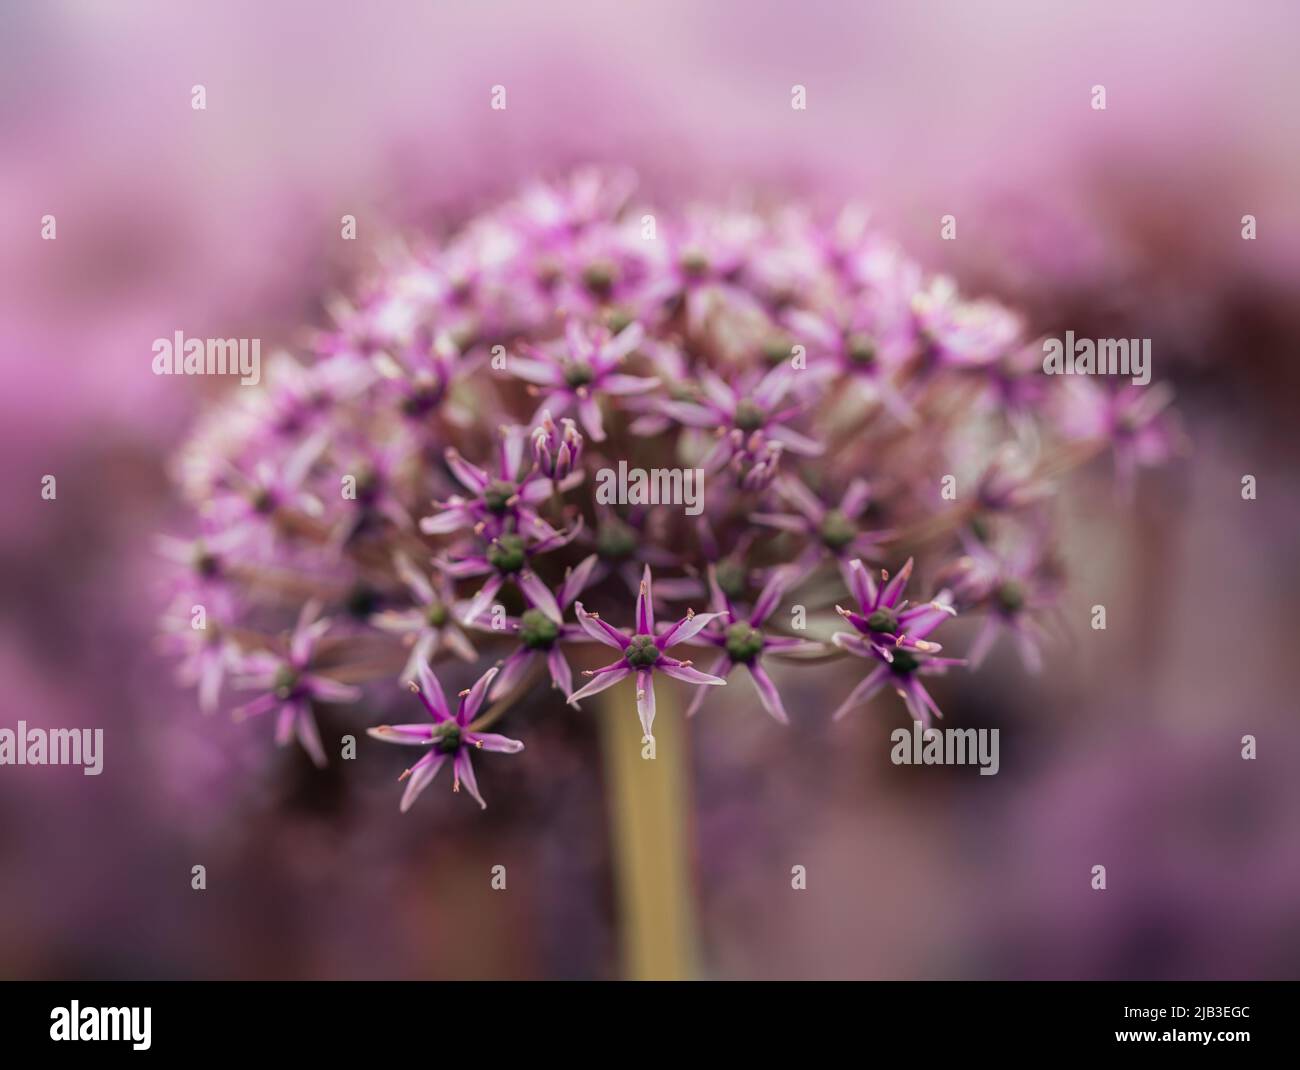 Closeup of flowerhead of Allium atropurpureum 'Miami' Stock Photo